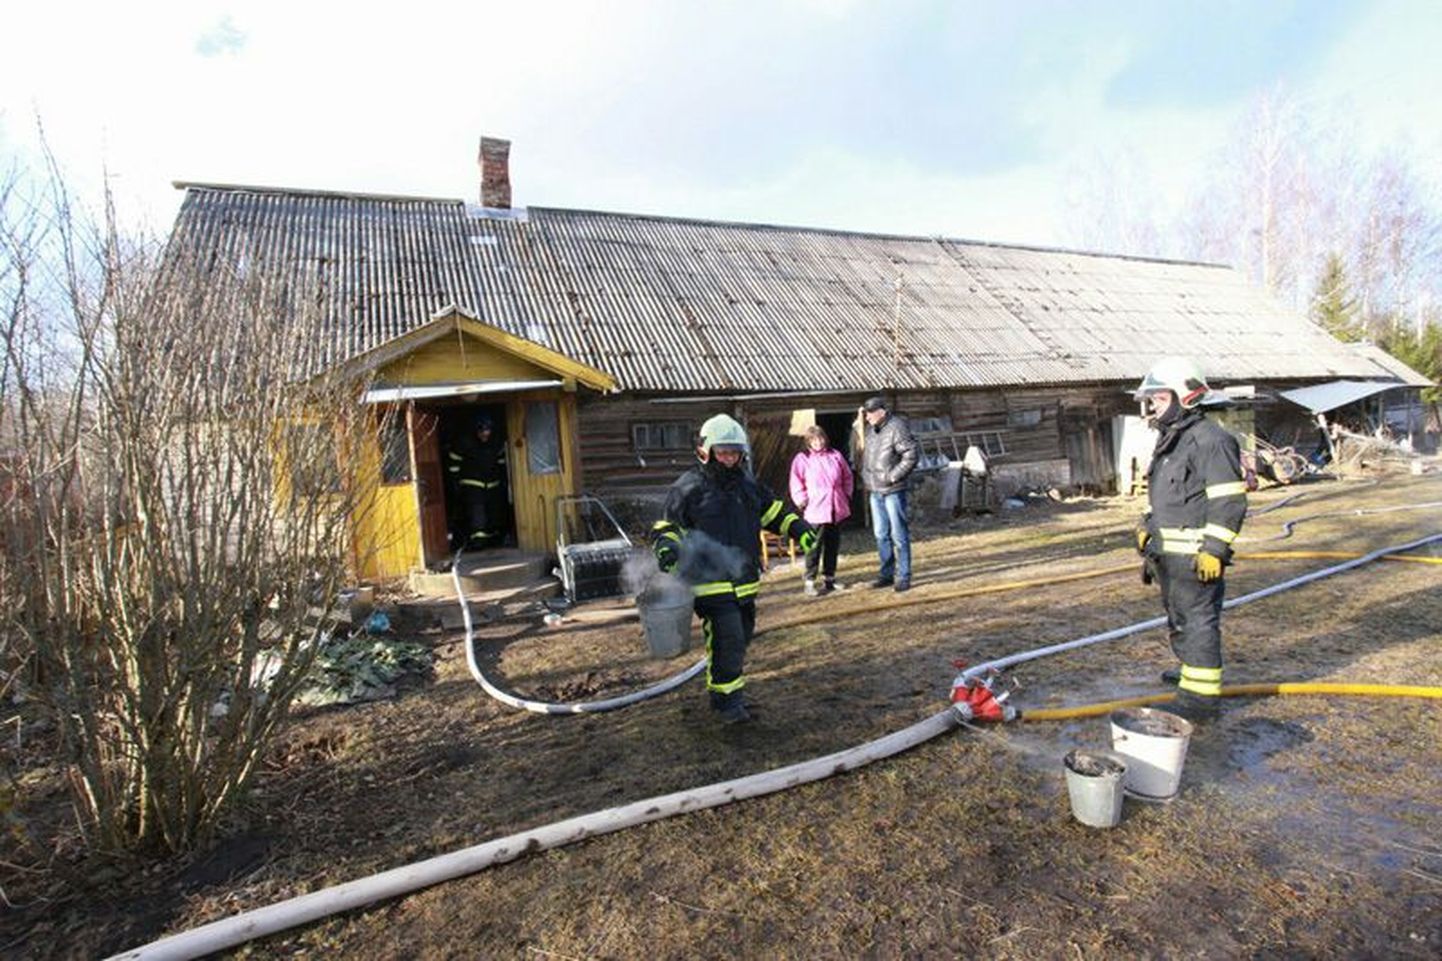 Eile pärastlõunal oli tulekahju Viru-Nigula vallas Metsavälja külas asuvas elumajas, kus süttis korstnajala ja seina vaheline praht.